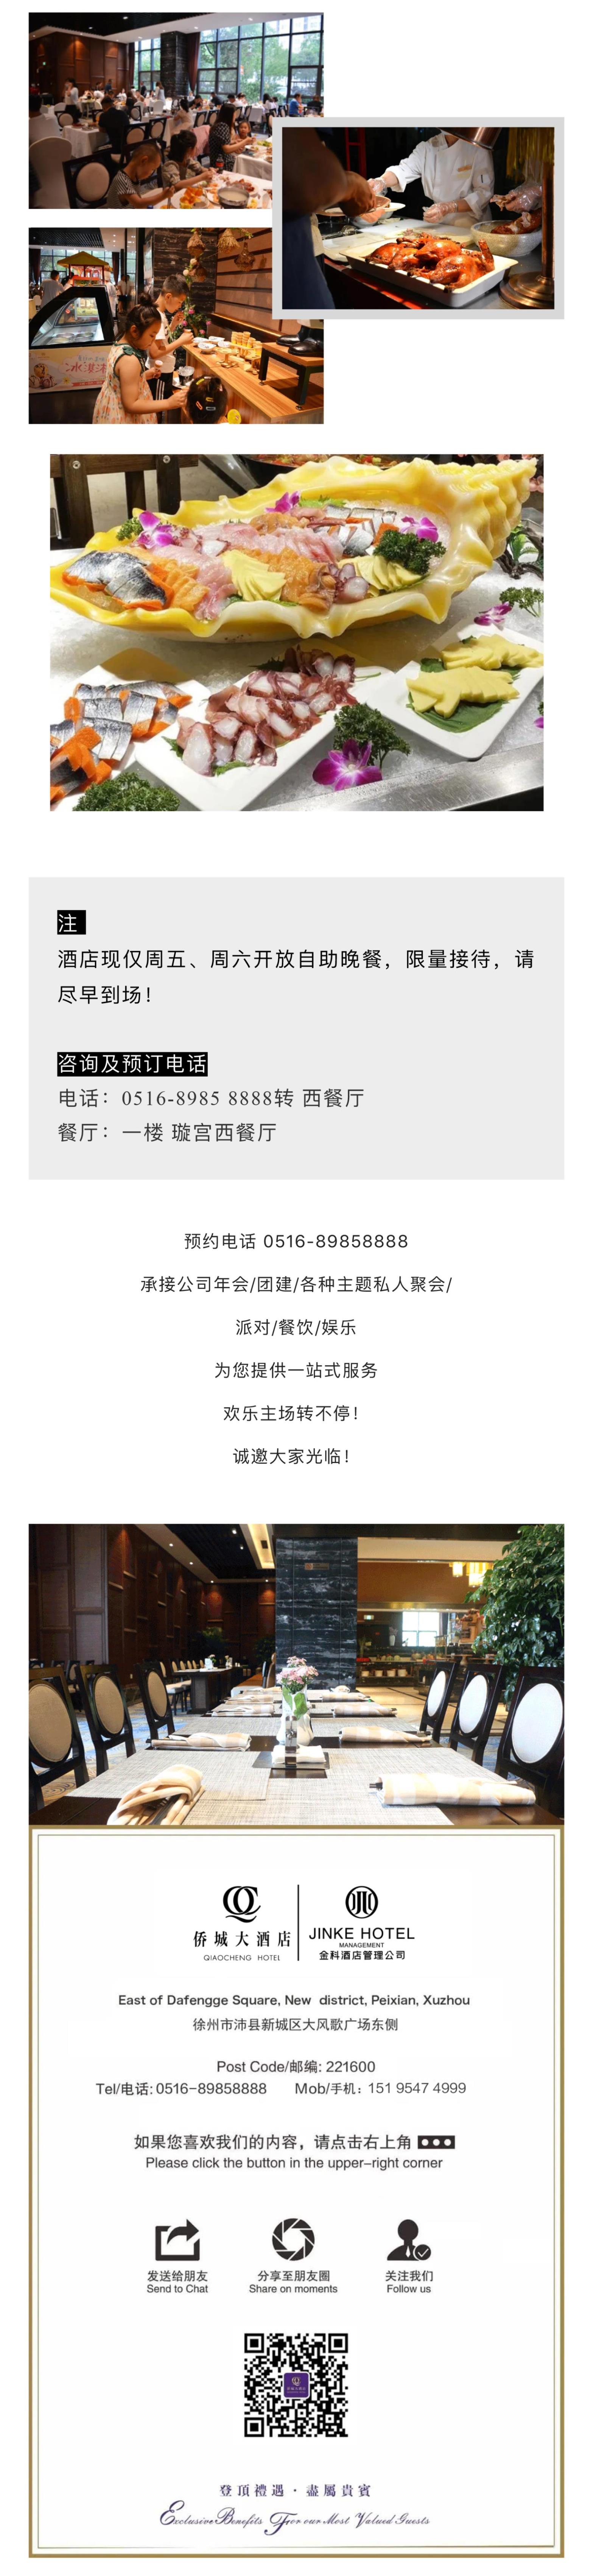 璇宫西餐厅每周五、周六 (3) - 副本.jpg